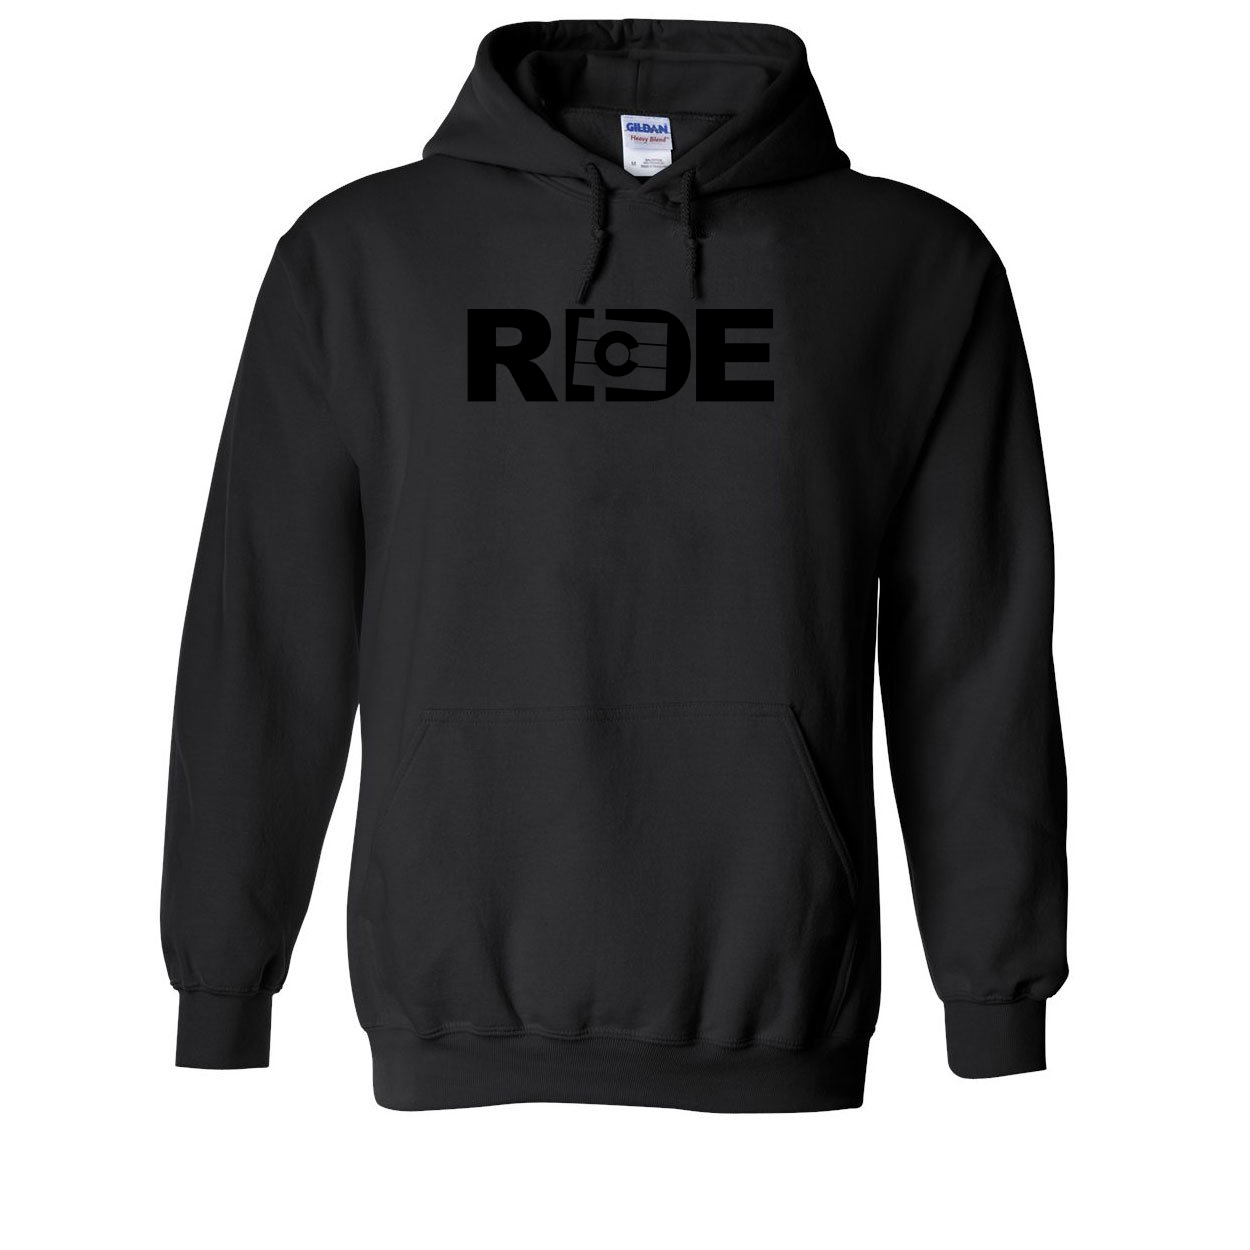 Ride Colorado Classic Sweatshirt Black (Black Logo)